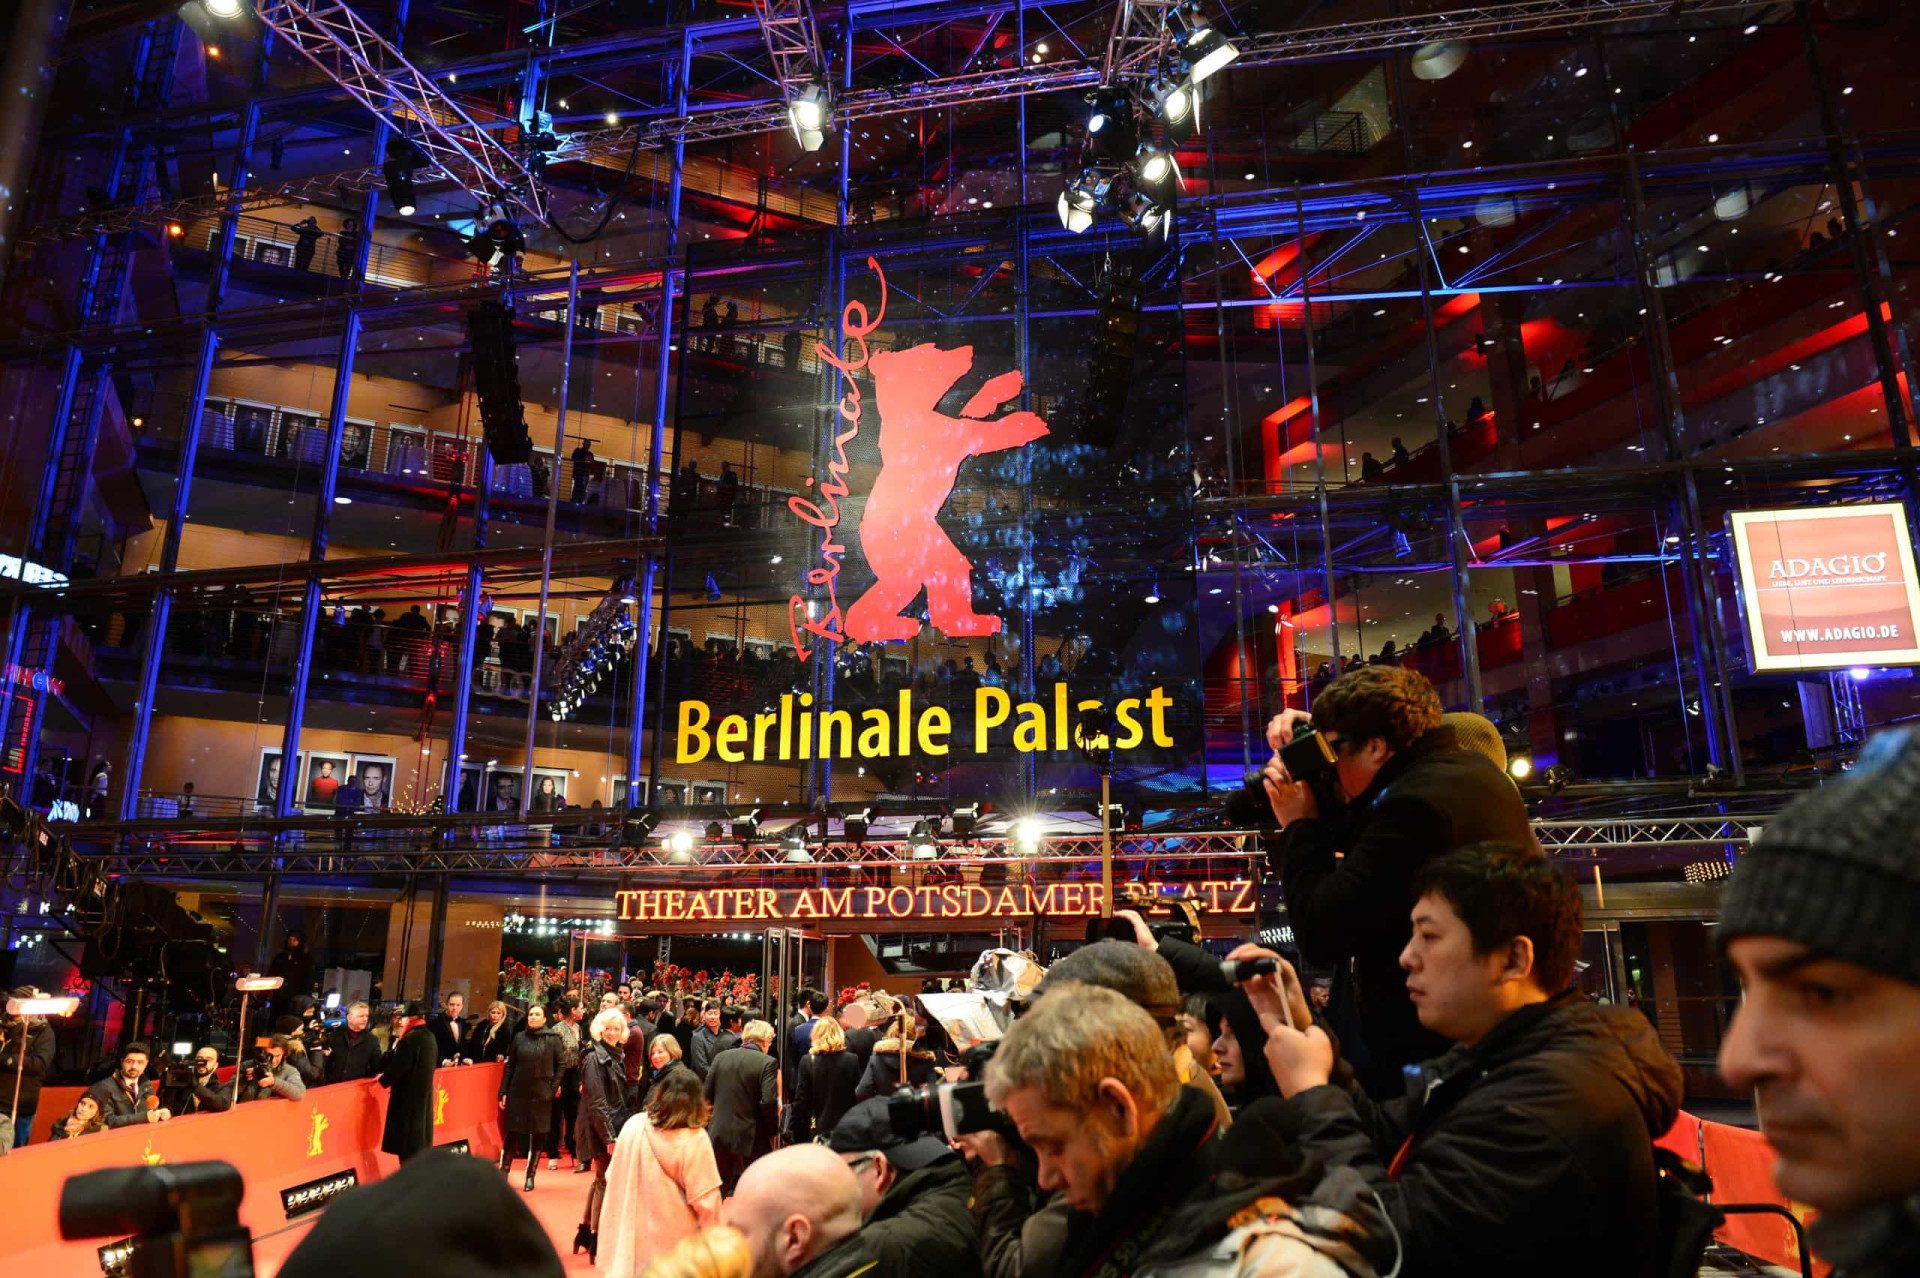 <p>Organisé chaque année en février, la Berlinale met en compétition des films pour le très convoité ours d'or. Le Berlinale Palast est le lieu où se tiennent les avant-premières en compétition.</p><p><a href="https://www.msn.com/fr-fr/community/channel/vid-7xx8mnucu55yw63we9va2gwr7uihbxwc68fxqp25x6tg4ftibpra?cvid=94631541bc0f4f89bfd59158d696ad7e">Suivez-nous et accédez tous les jours à du contenu exclusif</a></p>